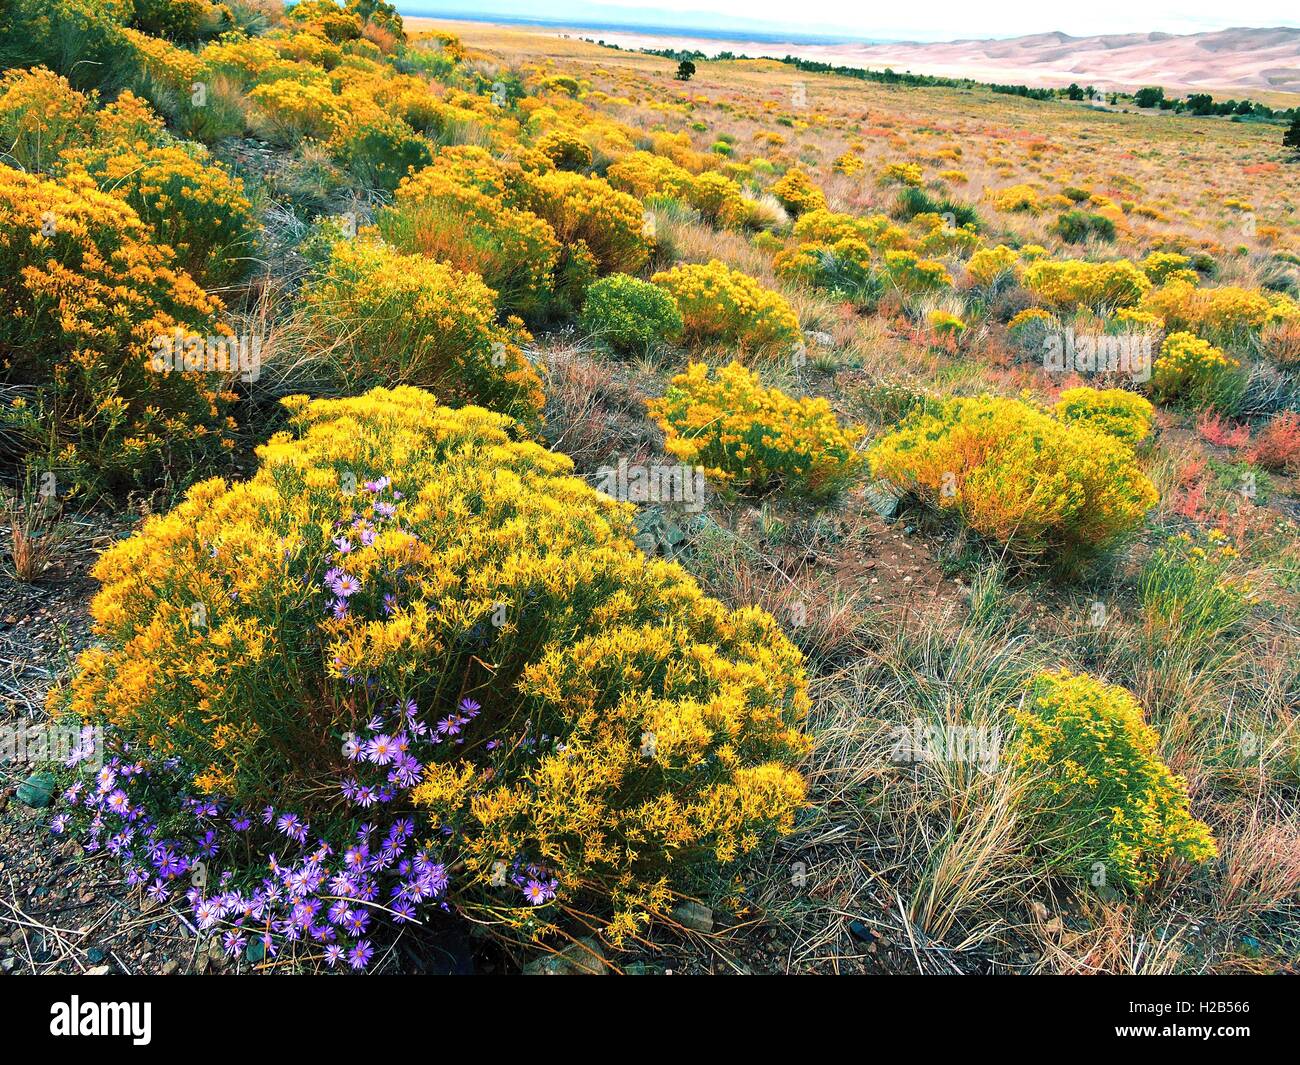 La fin de saison, les fleurs sauvages fleurissent dans les prairies au Great Sand Dunes National Park dans Dunefield, Colorado. Banque D'Images